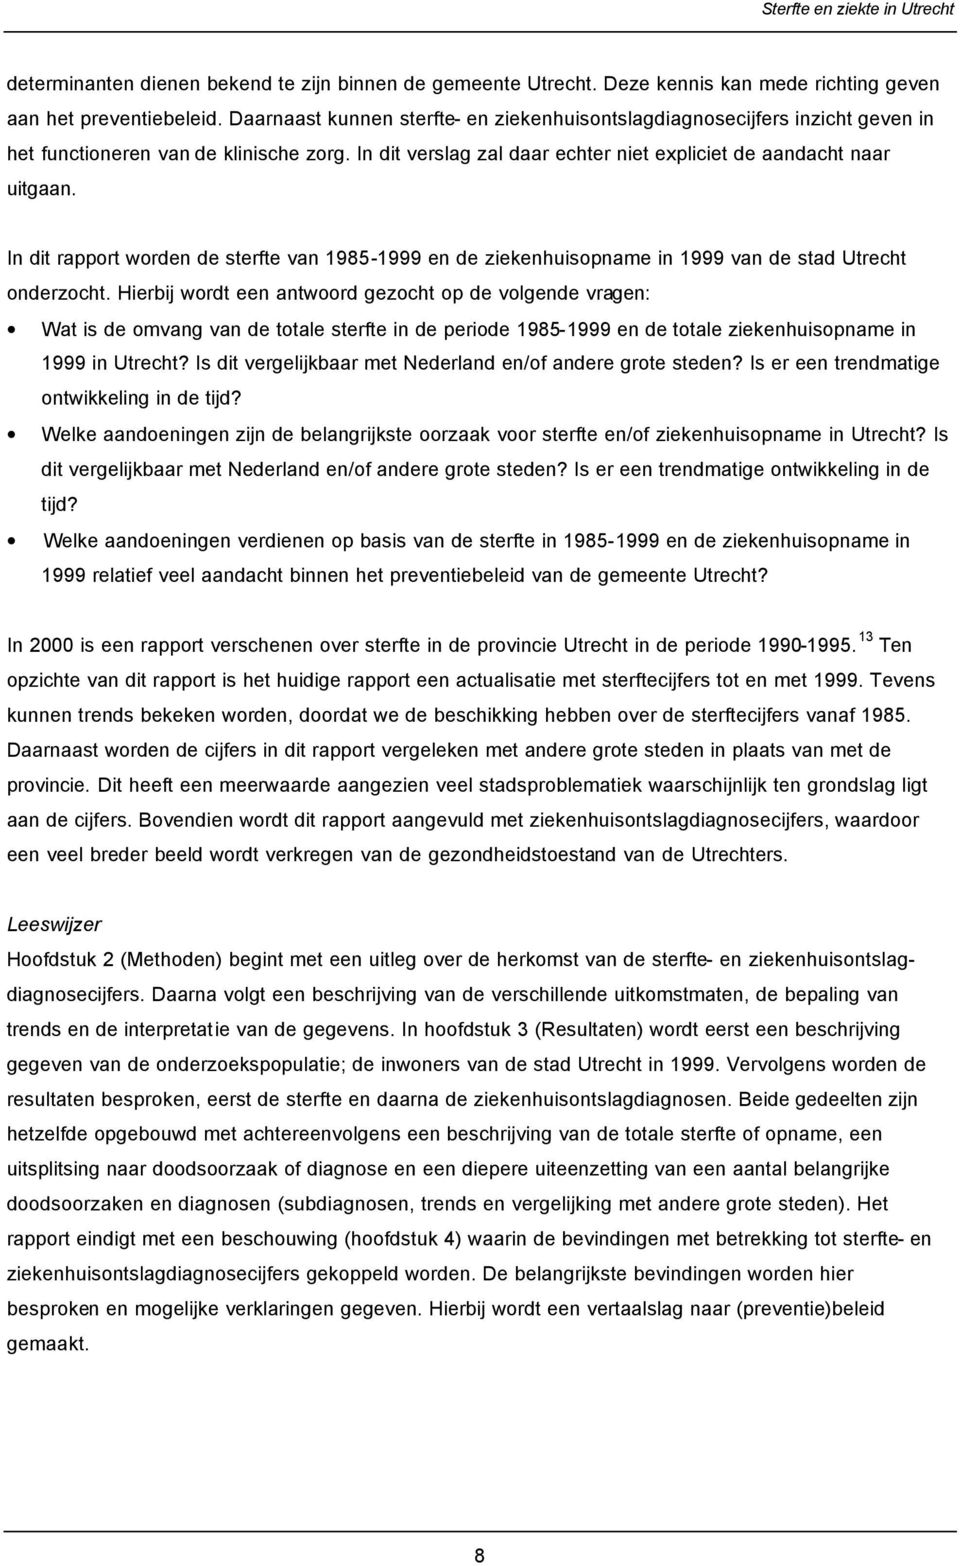 In dit rapport worden de sterfte van 1985-1999 en de ziekenhuisopname in 1999 van de stad Utrecht onderzocht.